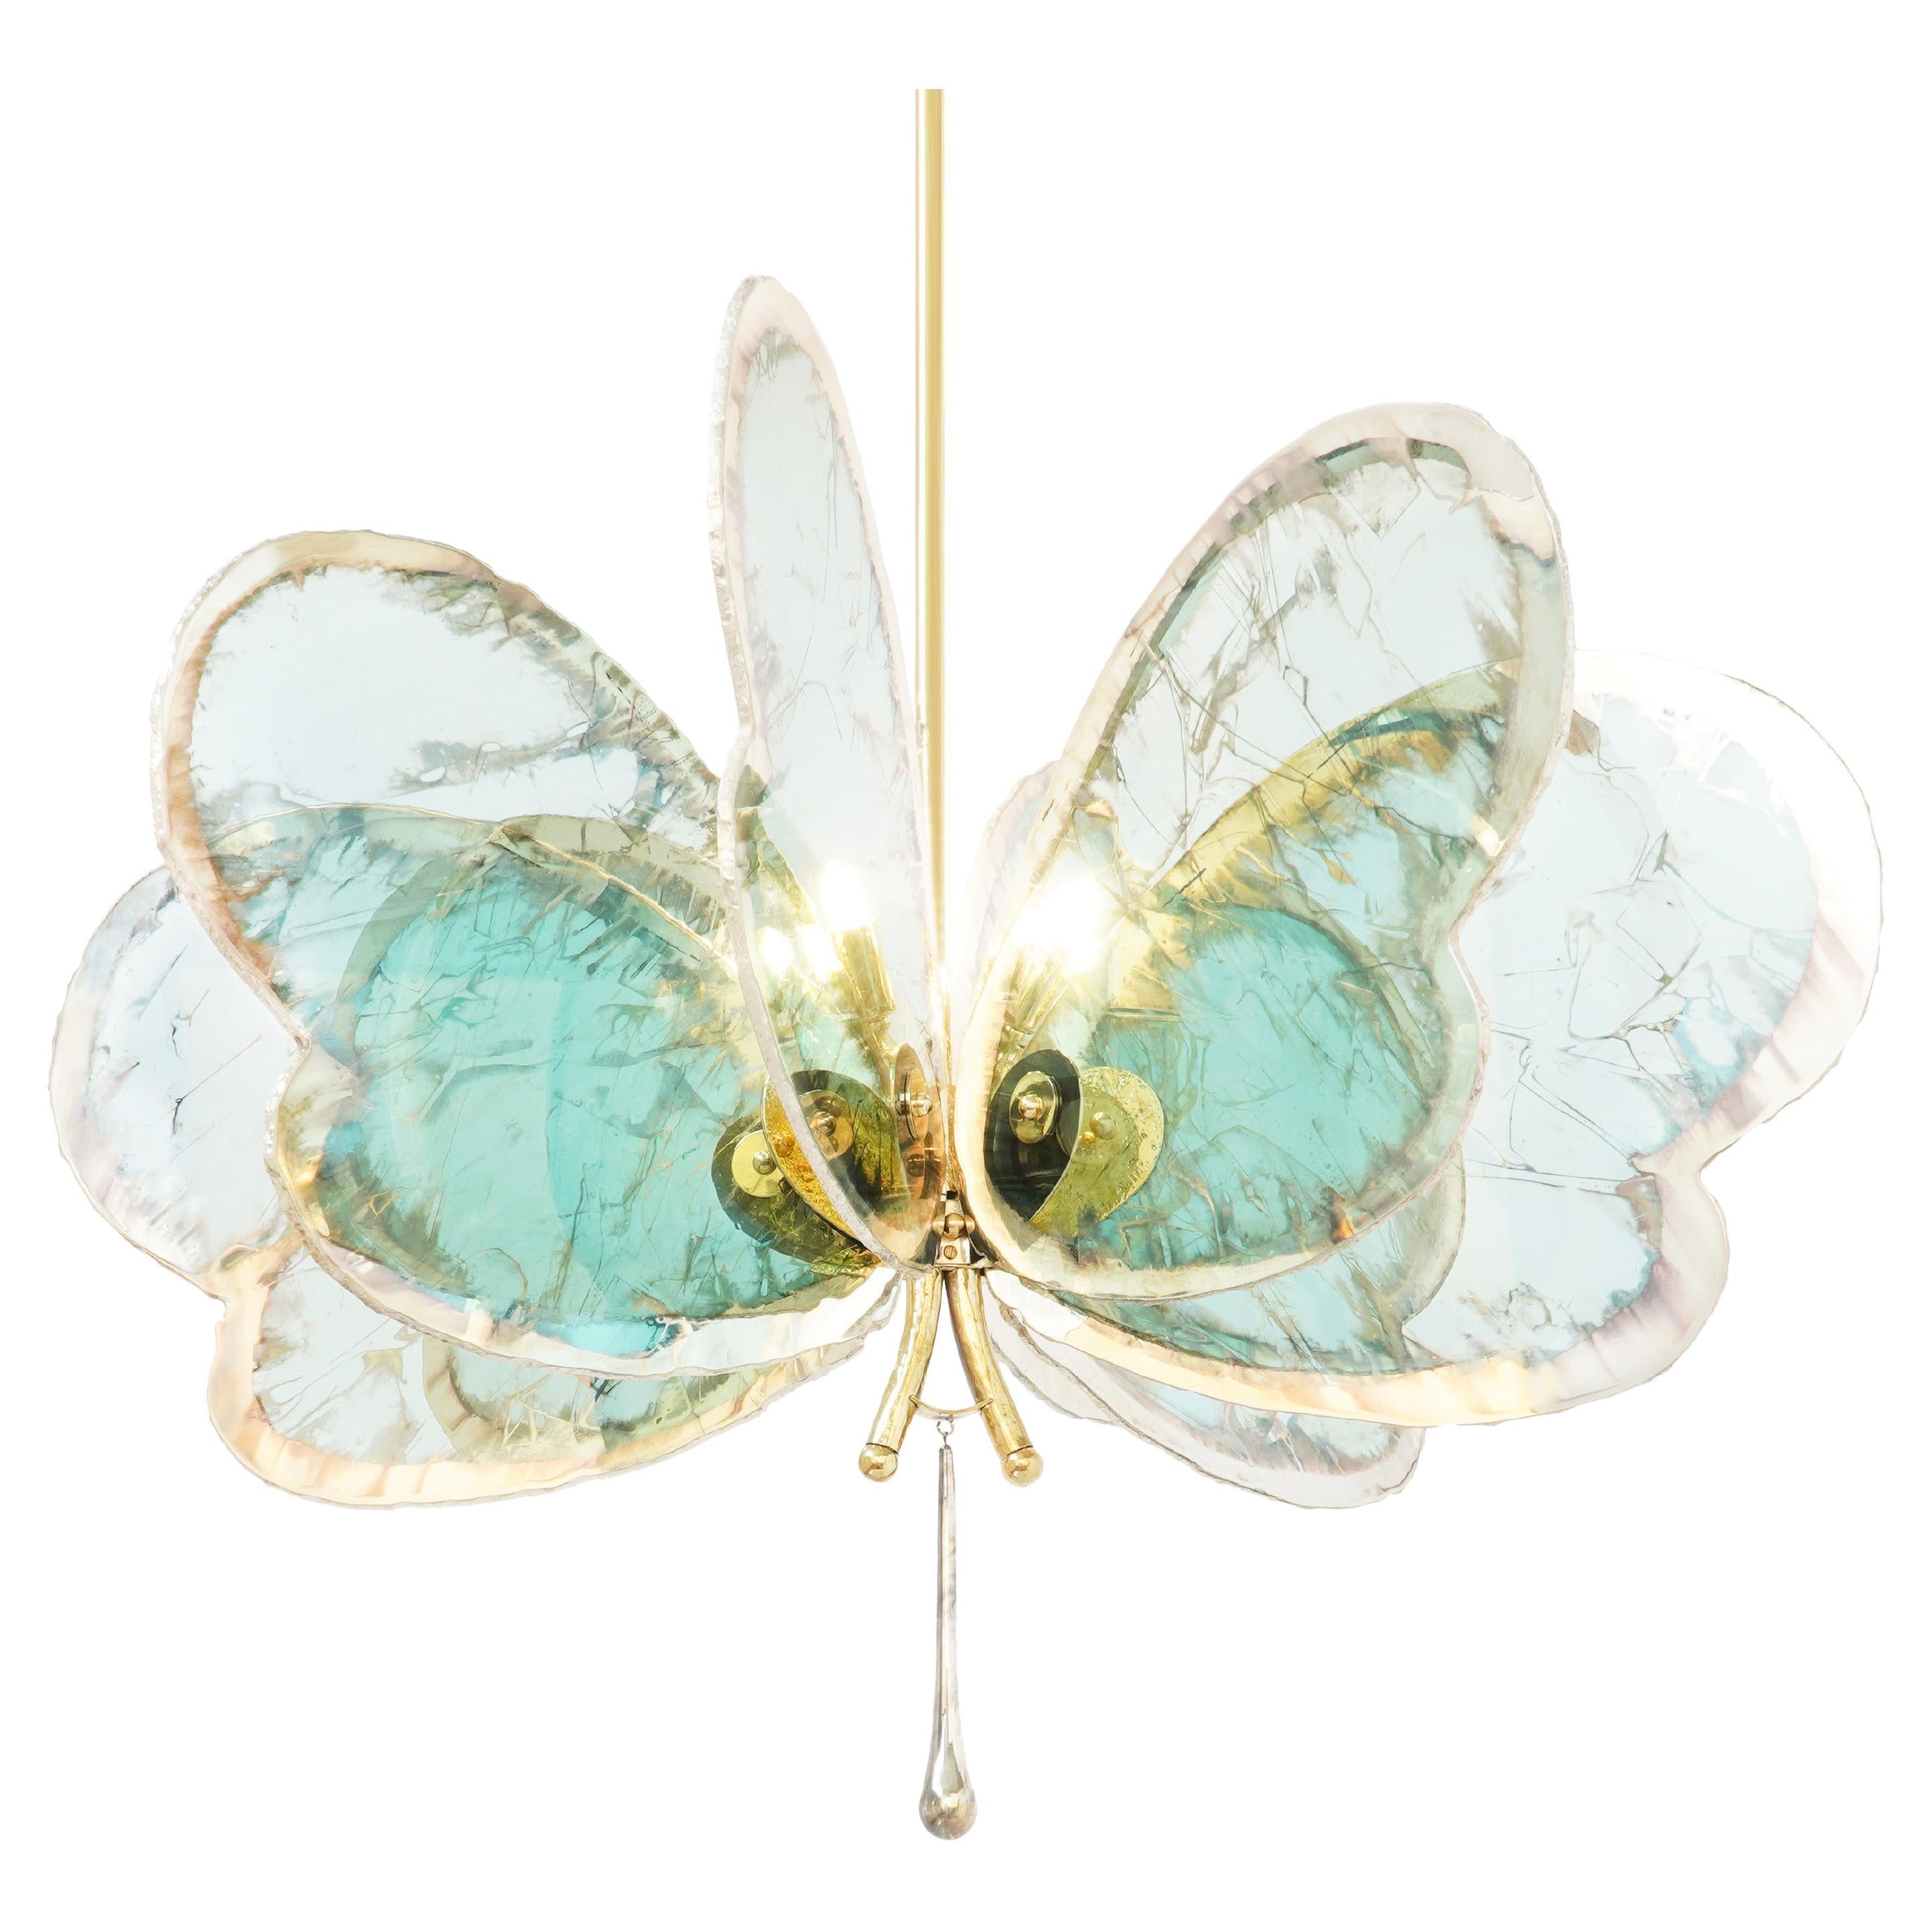  Schmetterling-Kronleuchter mit 8 Flügeln, versilbertes Glas, Jadefarbe, geschmolzenes Messing 